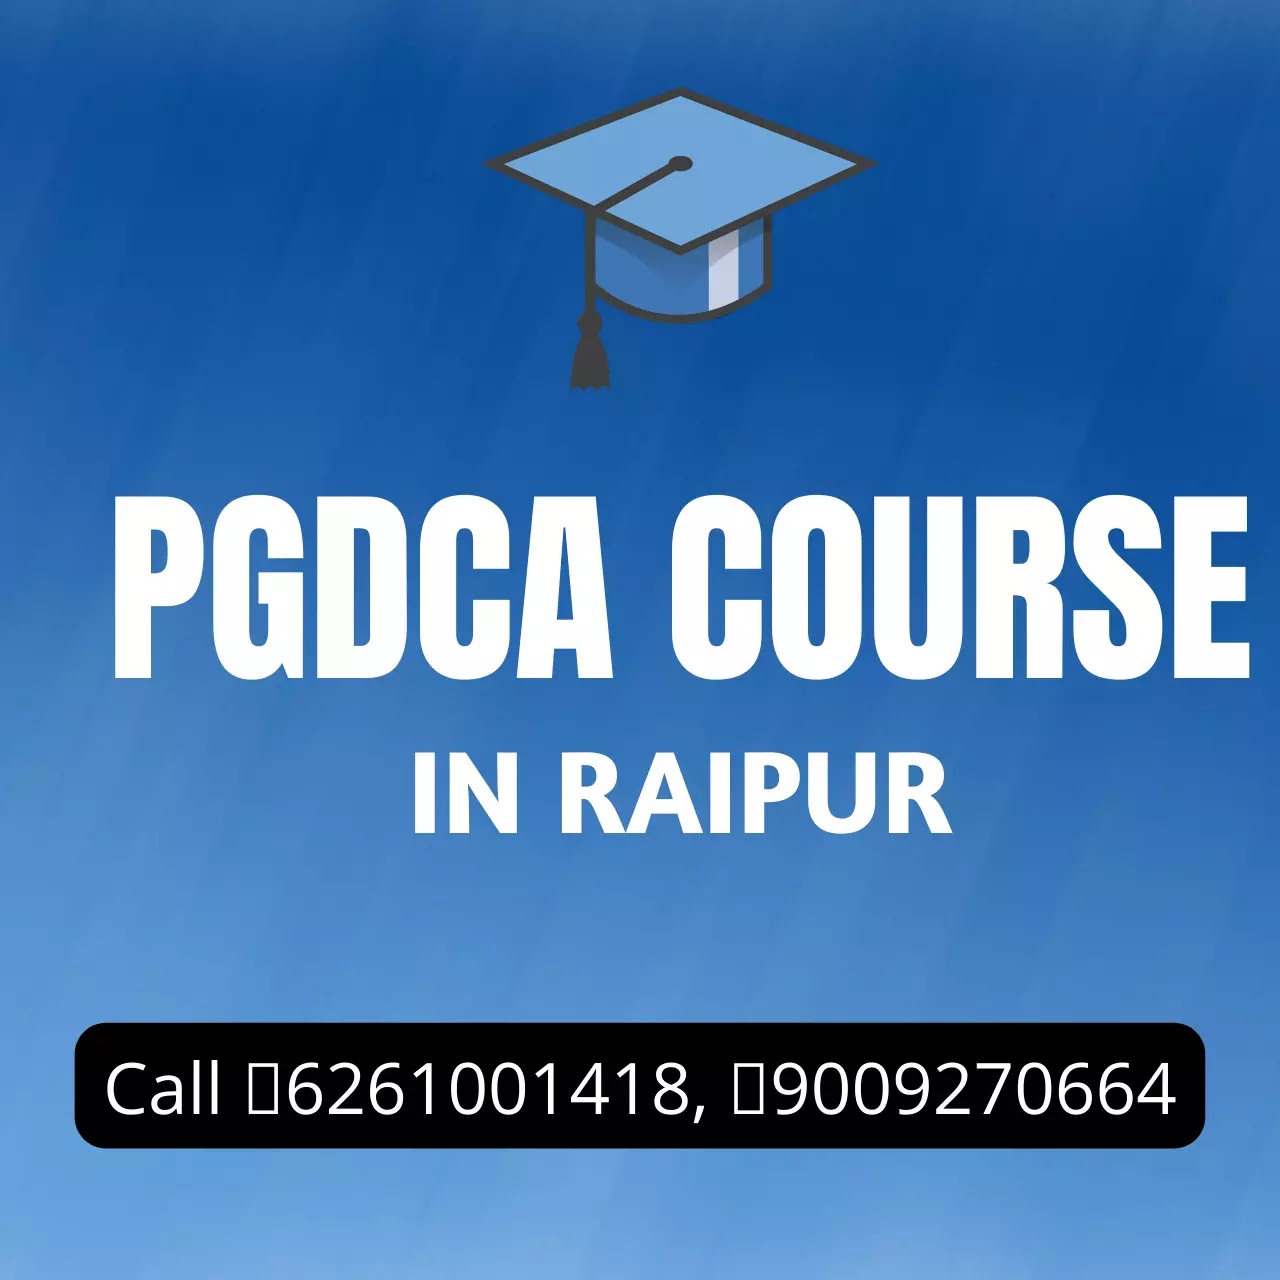 PGDCA Course in Raipur